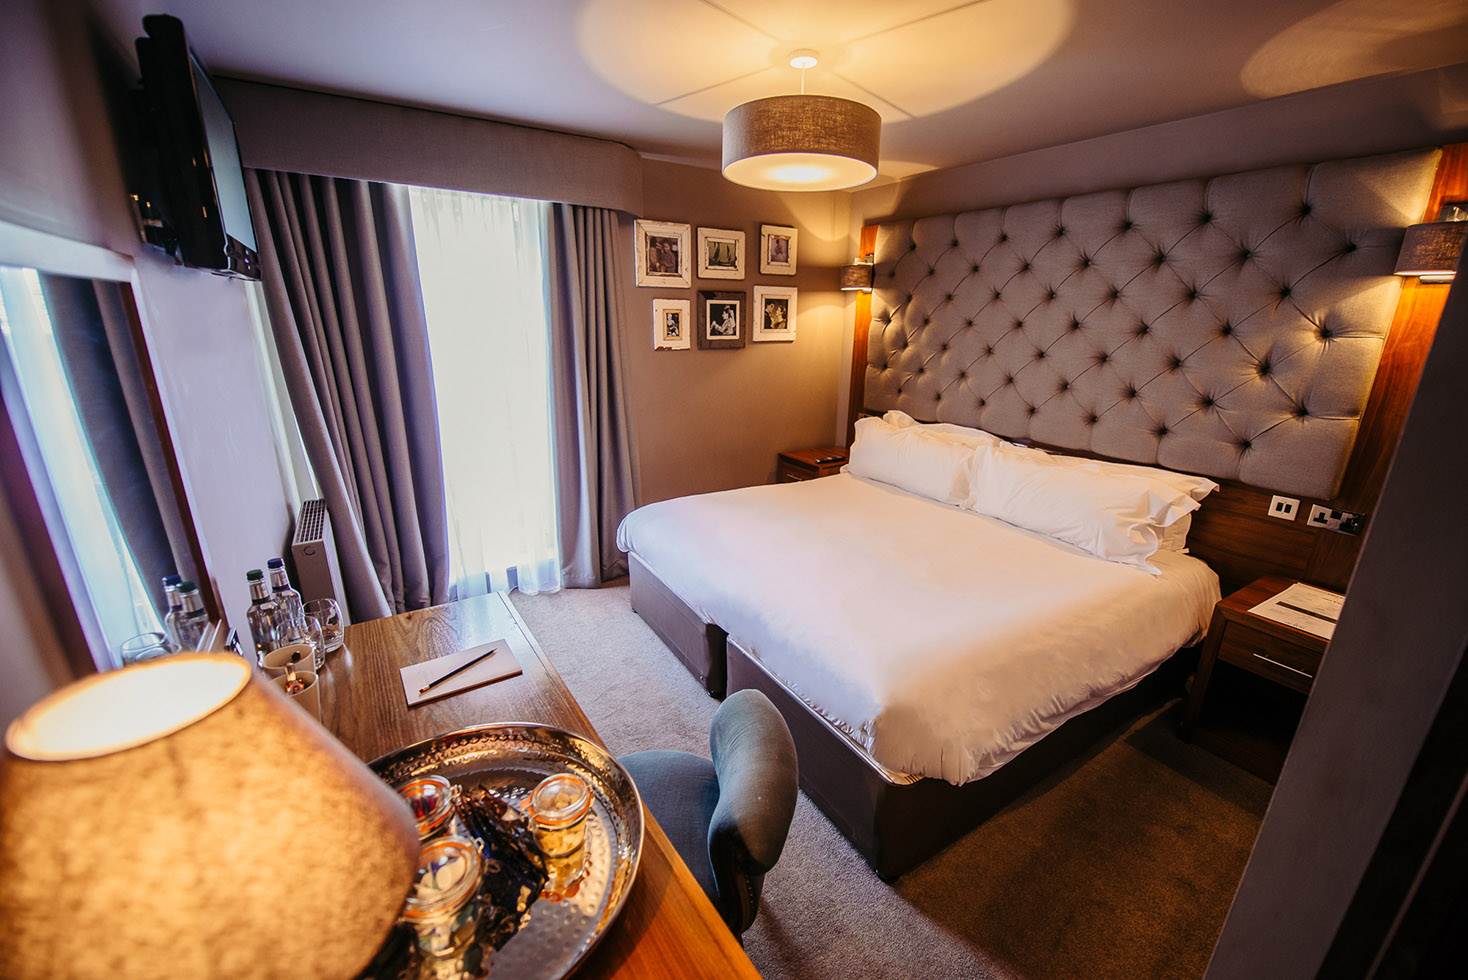 Murrayfield Hotel Bedroom in Edinburgh